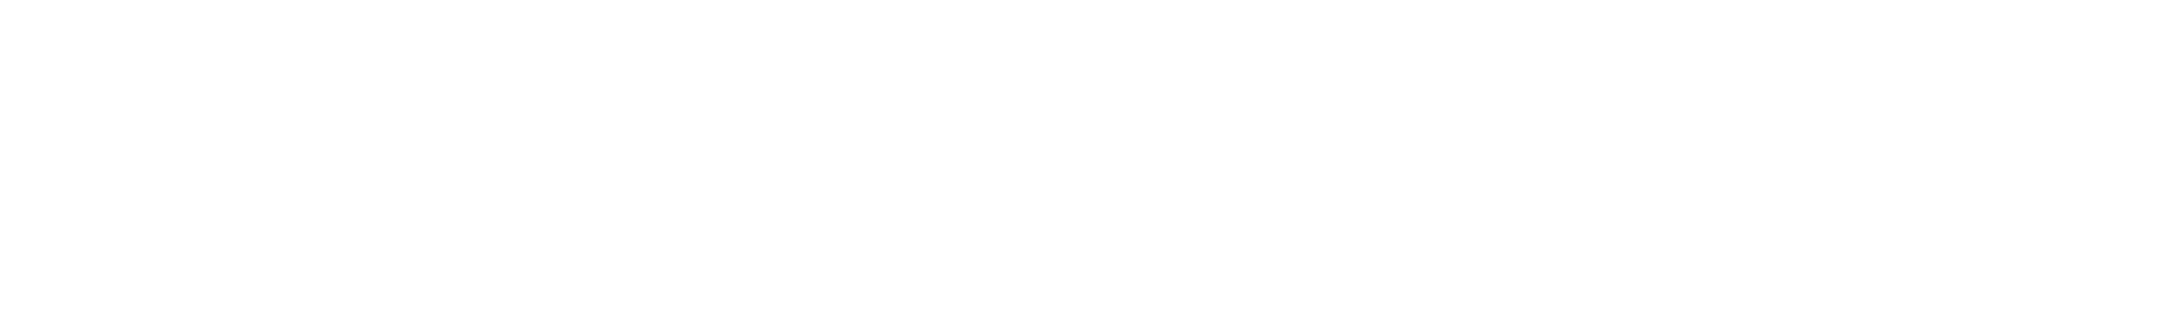 RoadScience_logo